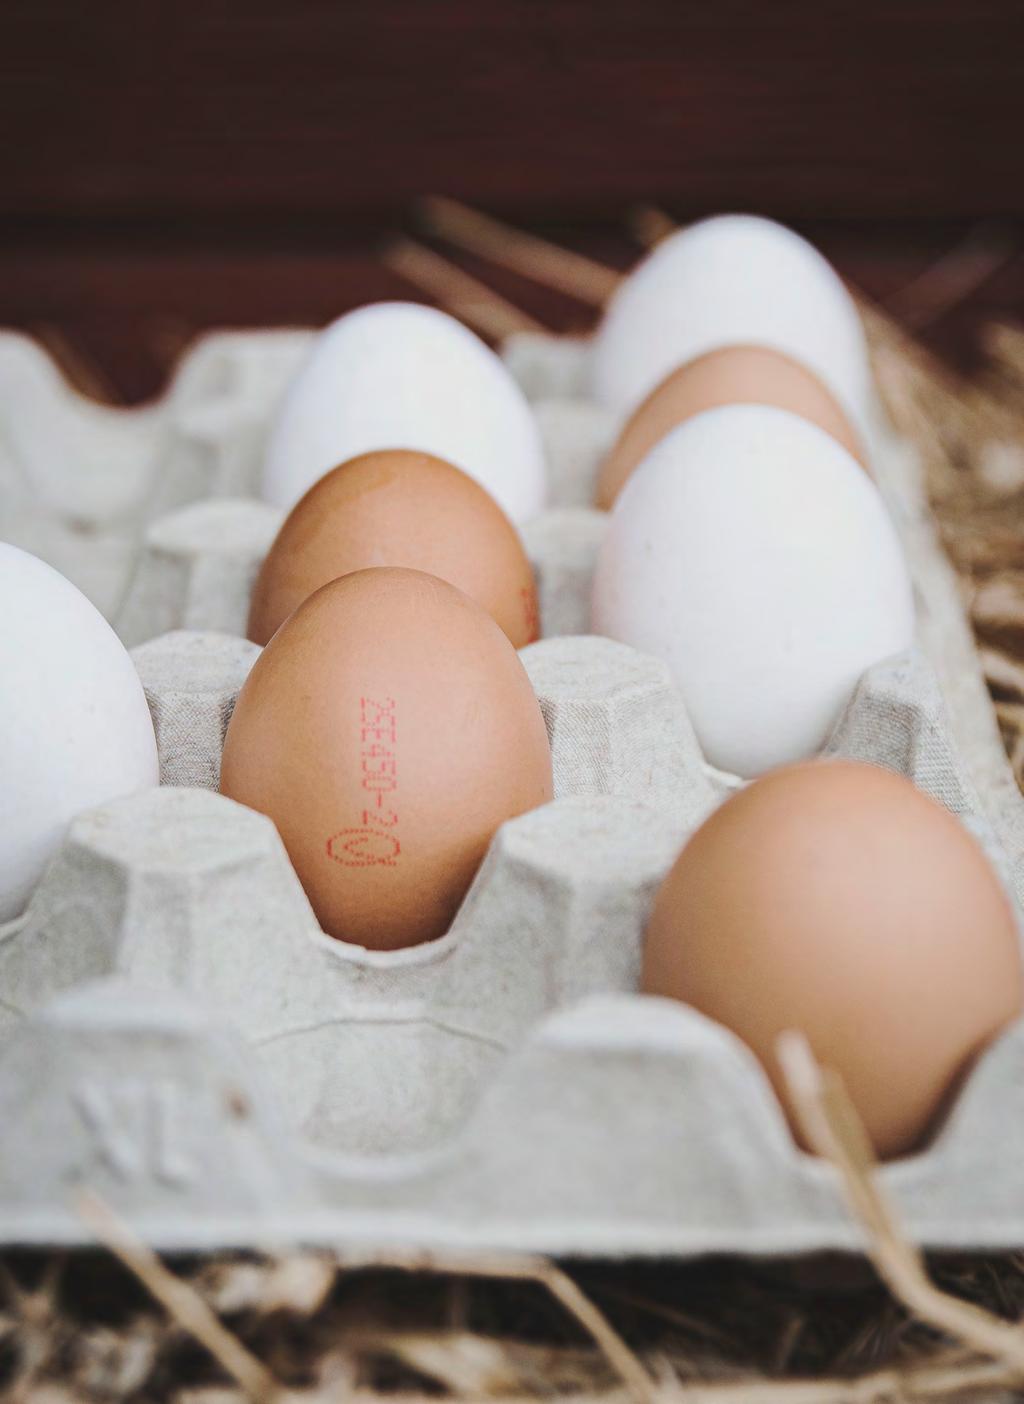 Välj ägg från Sverige Så vet du att ägget är svenskt Varje ägg har en rosa kod som berättar varifrån ägget kommer och hur det är producerat.